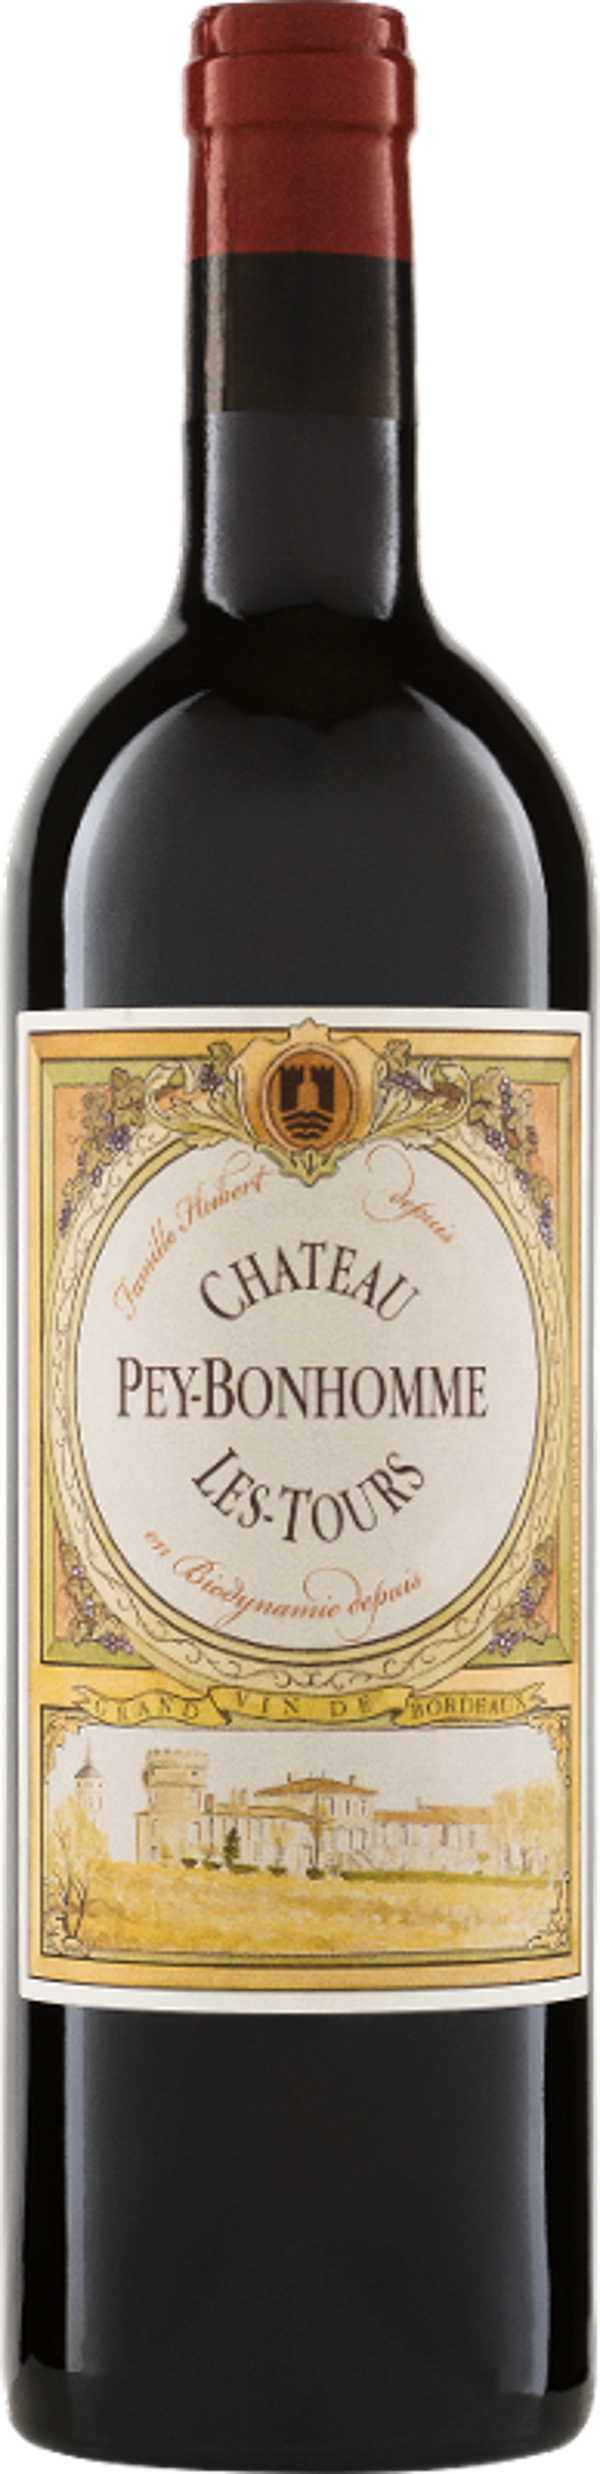 Produktfoto zu Château Peybonhomme-Les-Tours